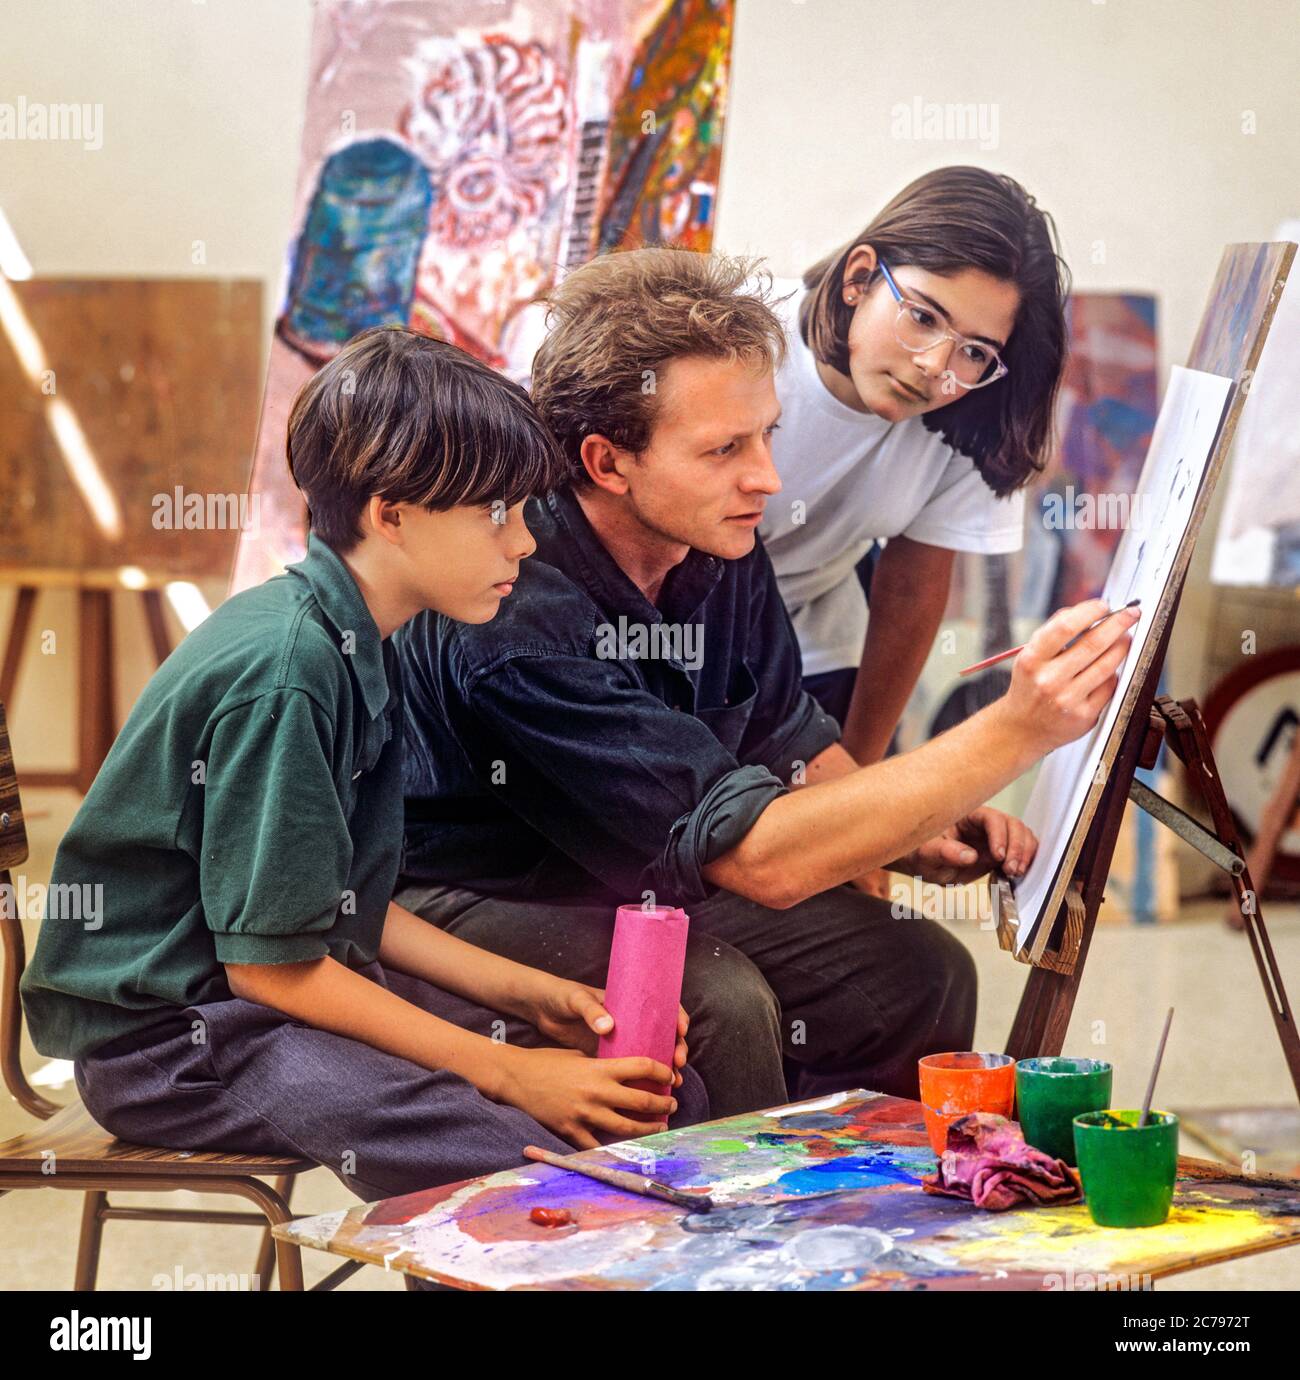 KUNSTKLASSE Junior School Lehrer und Junior Mädchen & Jungen Schüler arbeiten an einem Aquarell Malerei in einer Schule Kunst Klassenzimmer Stockfoto